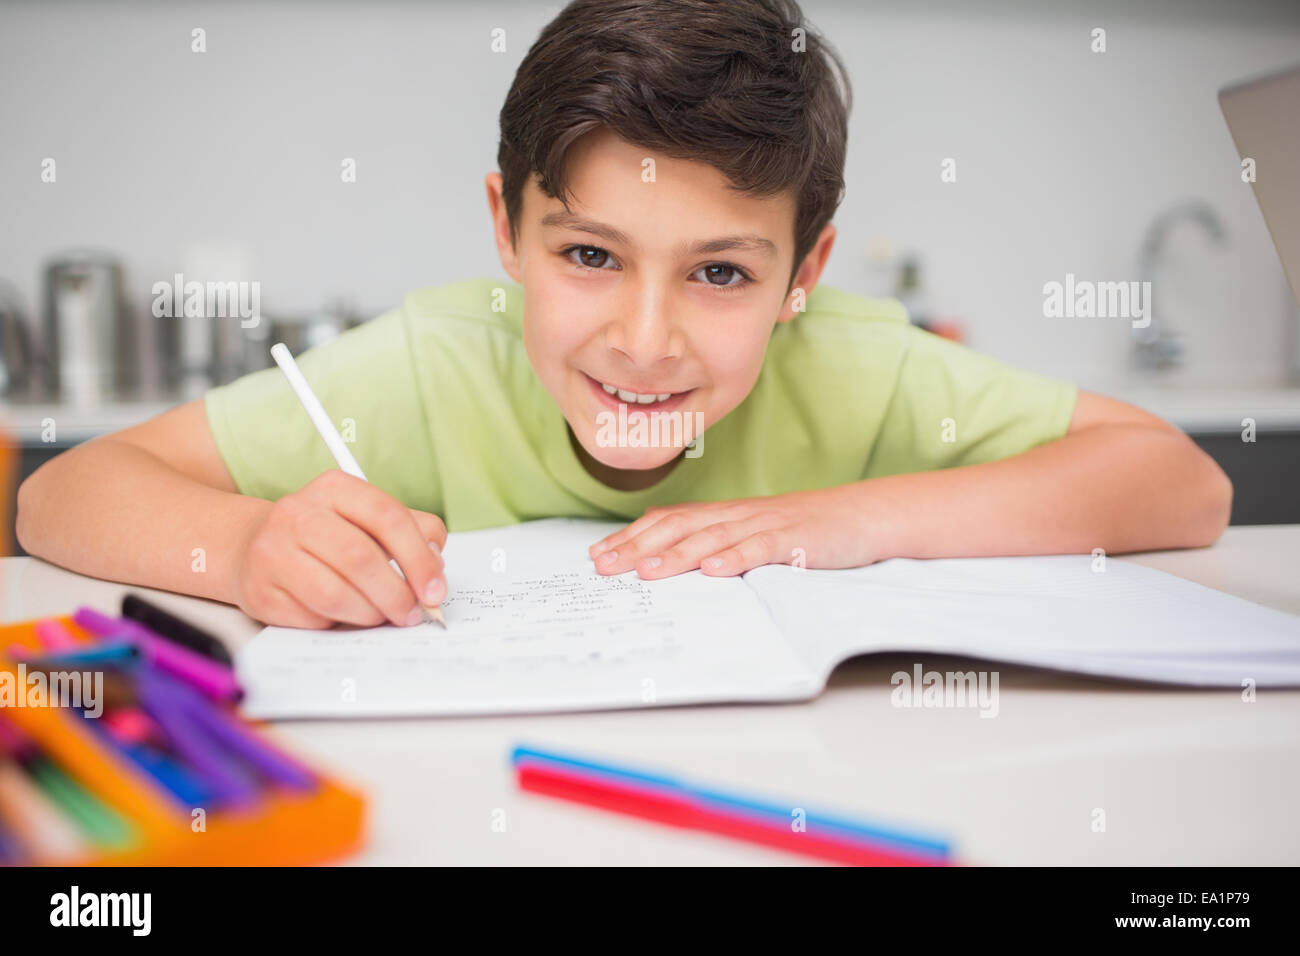 Smiling boy doing Homework in kitchen Banque D'Images